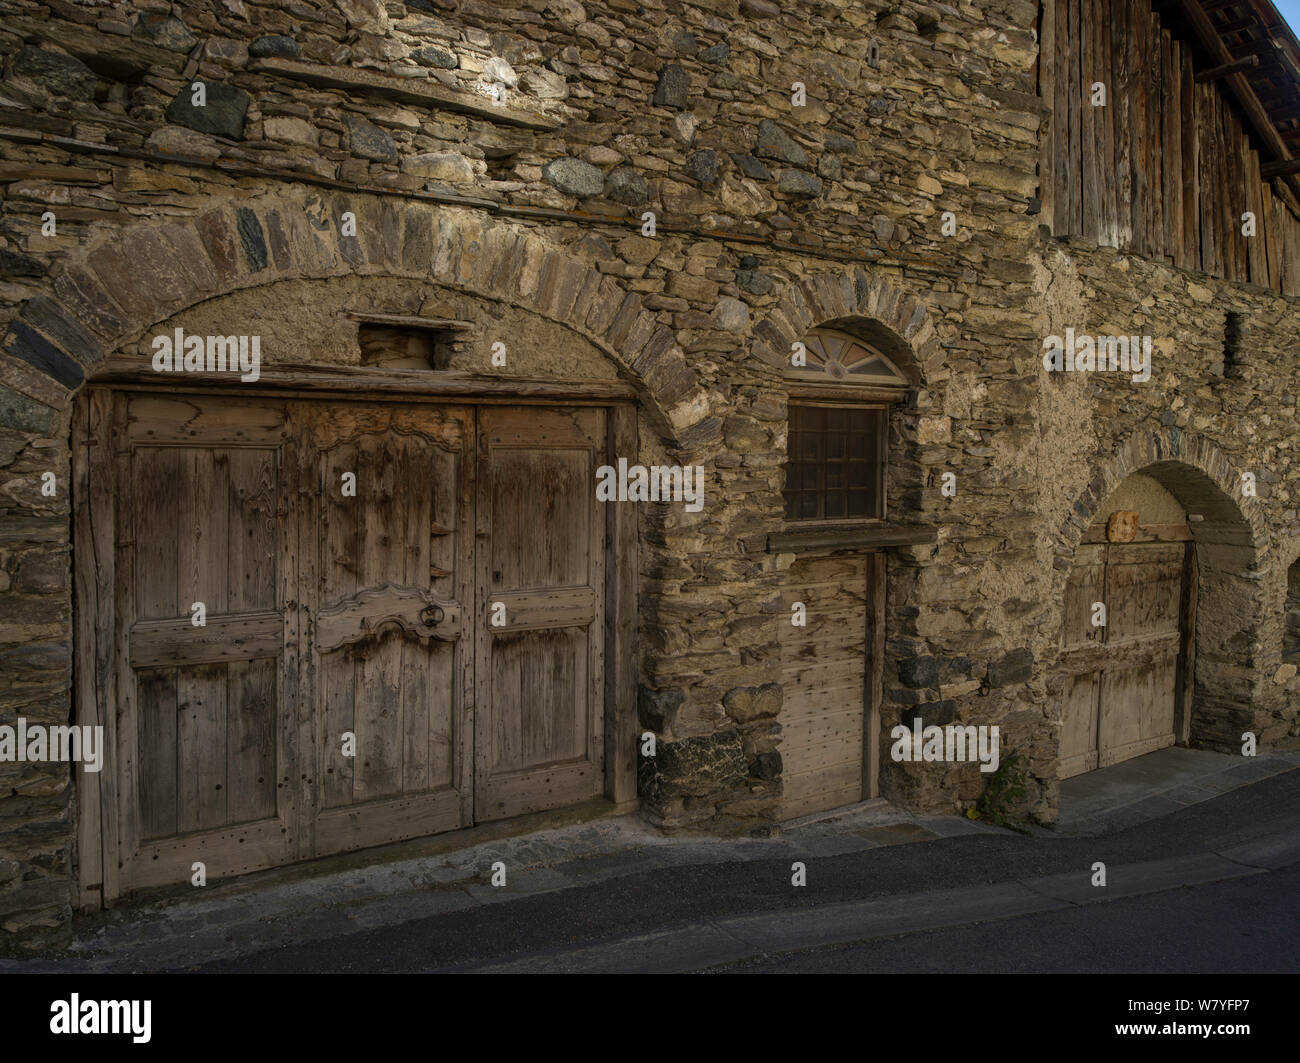 Bâtiment en pierre avec portes en bois, typiques de la région. Queyras, Hautes-Alpes, France, octobre 2014. Banque D'Images